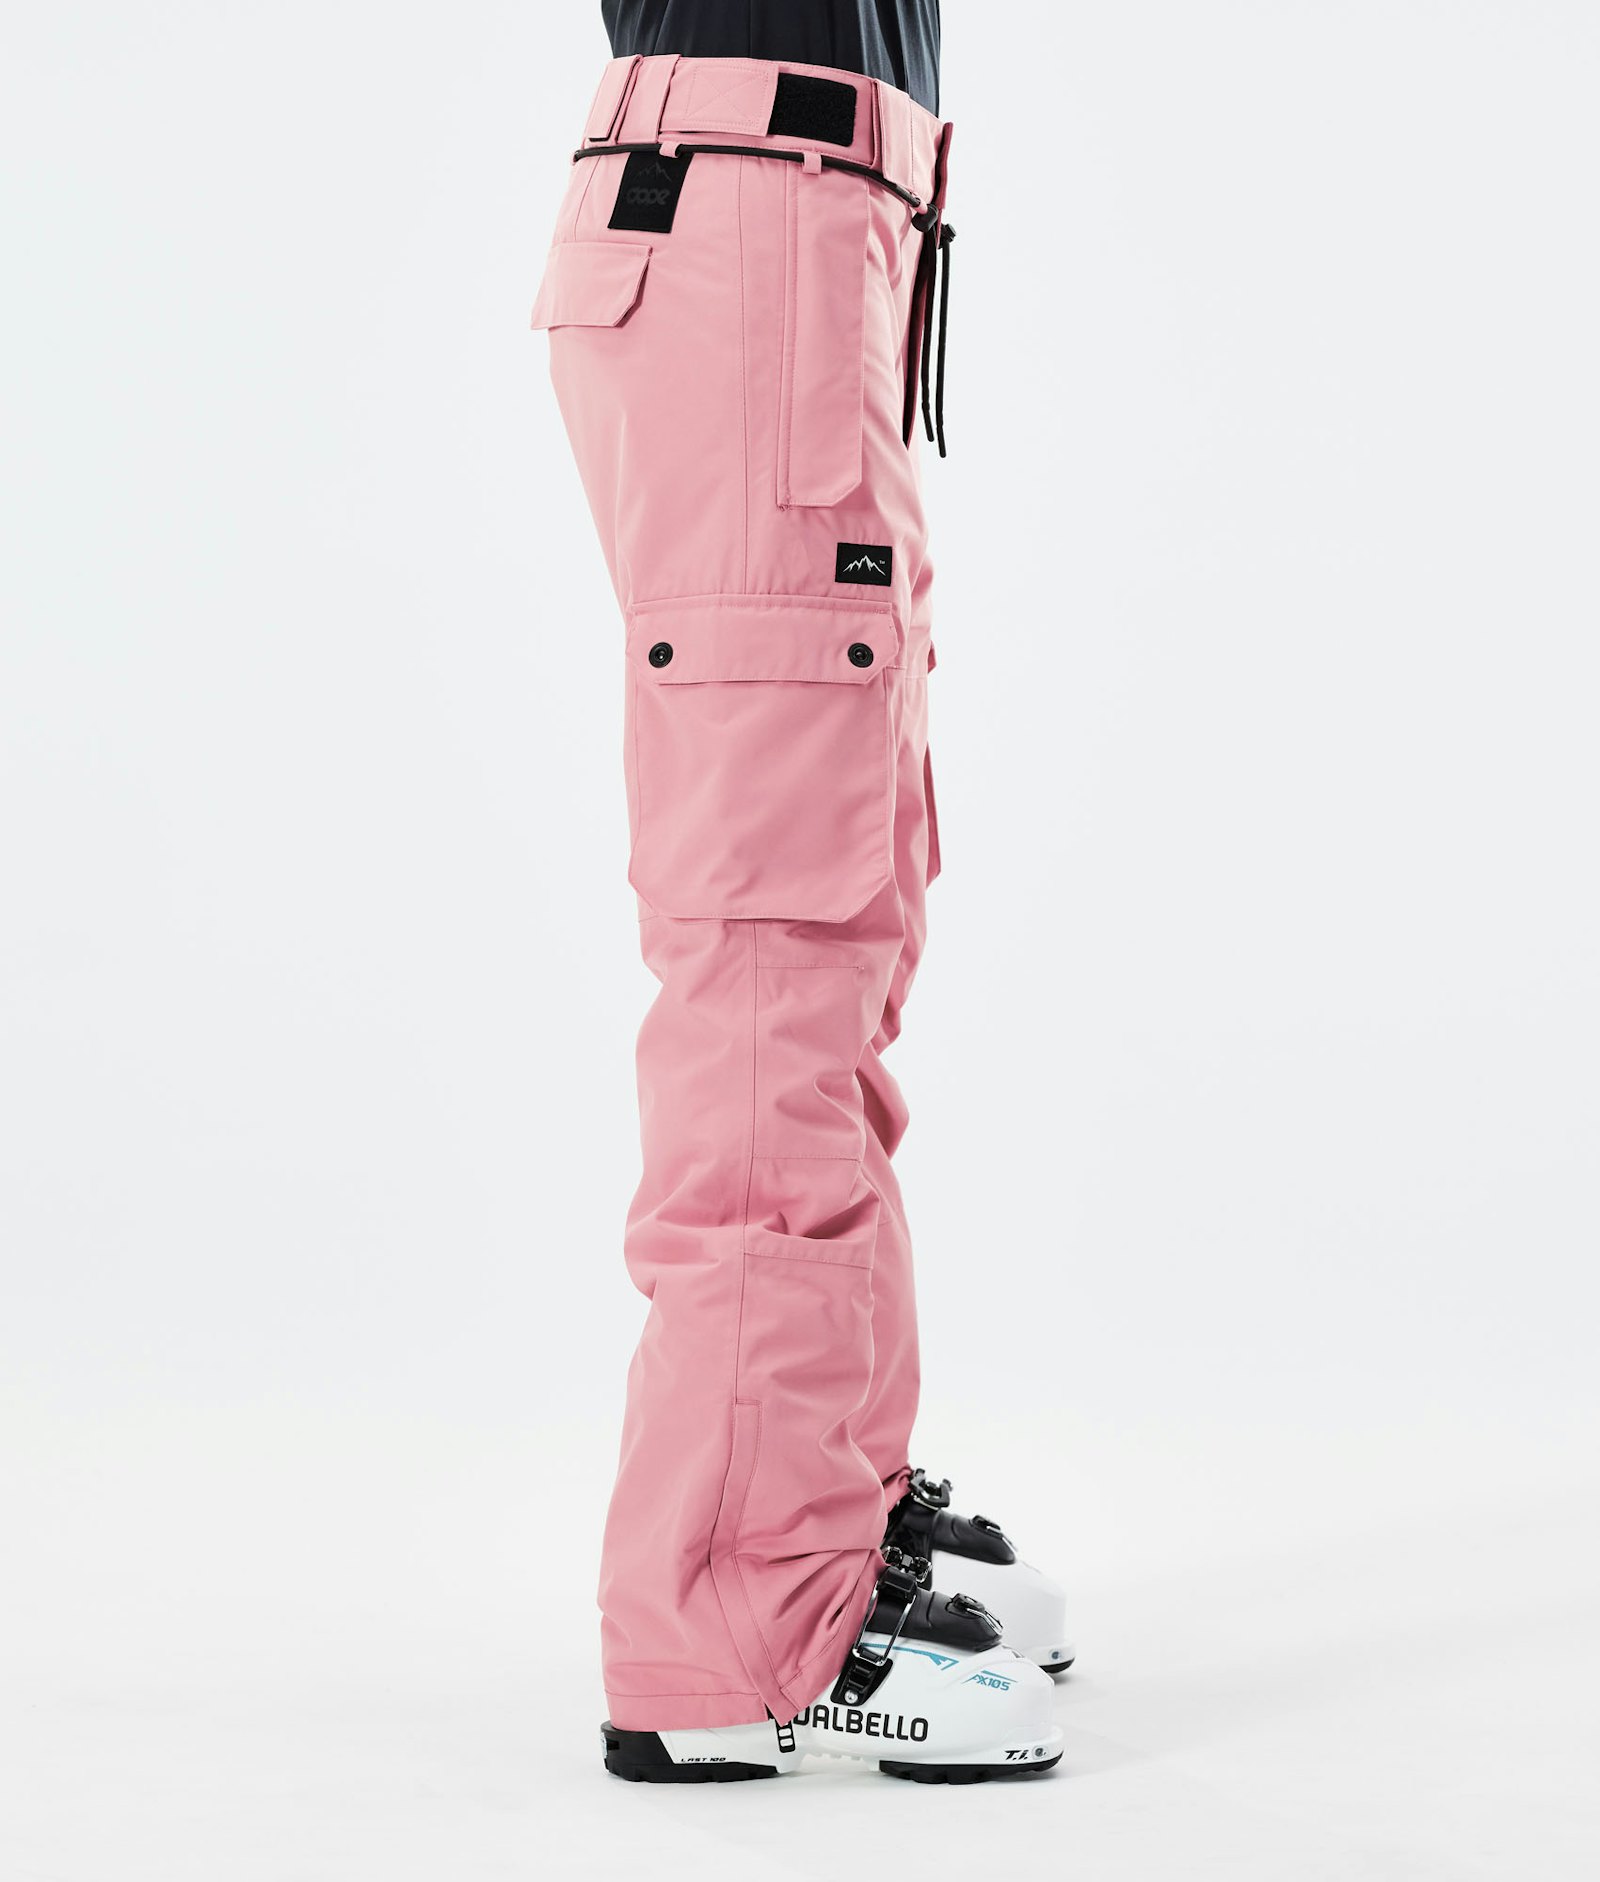 Iconic W 2021 Skihose Damen Pink